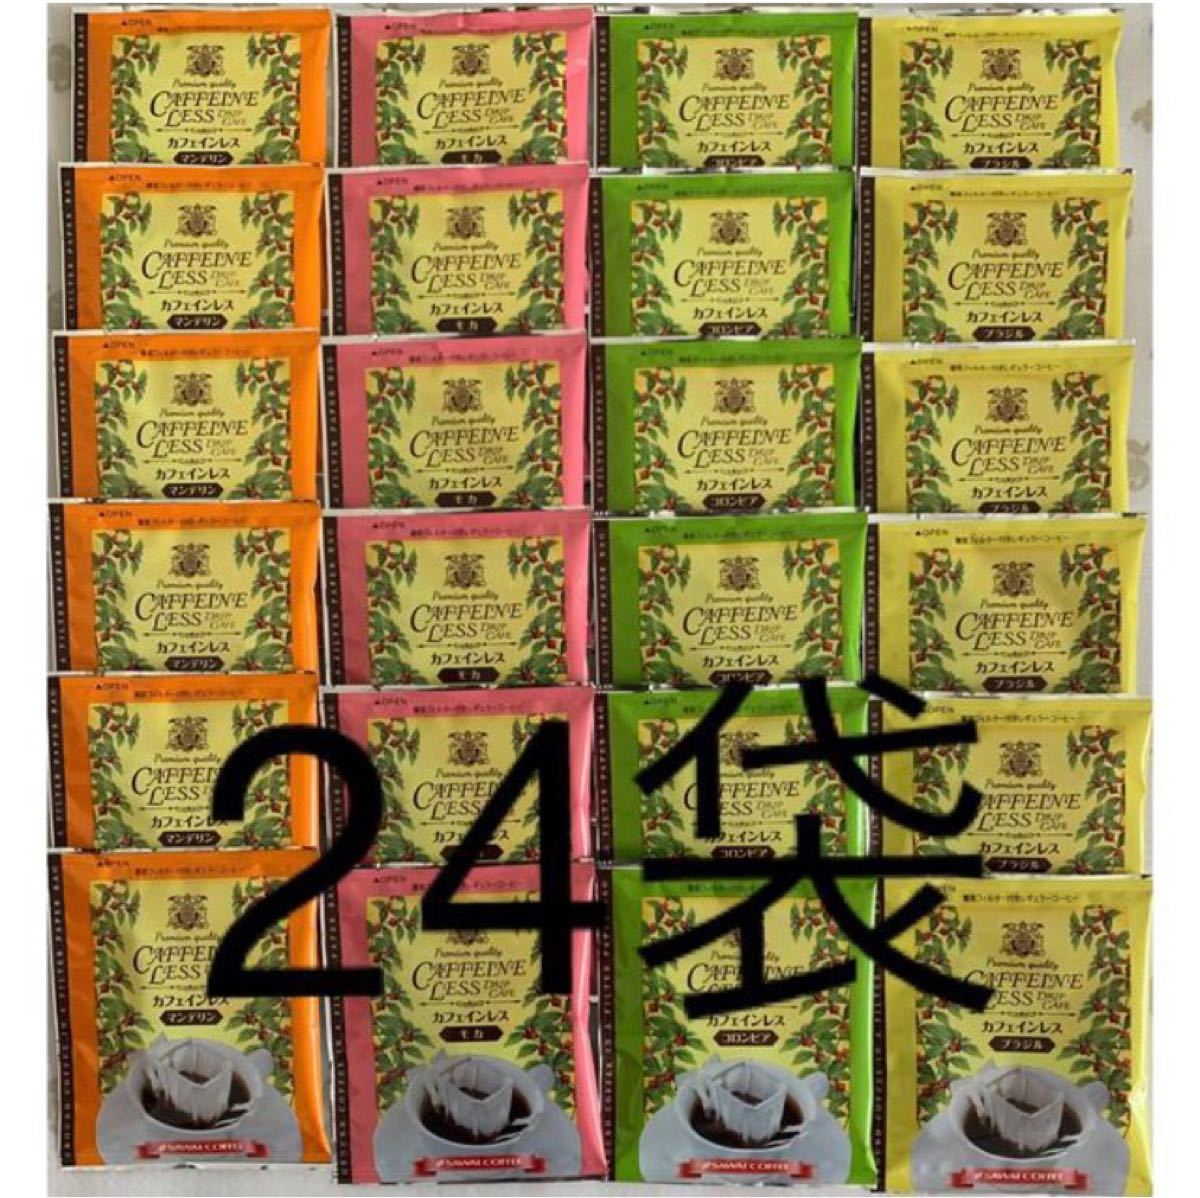 澤井珈琲 カフェインレス 4種で計24袋 ドリップバッグコーヒー